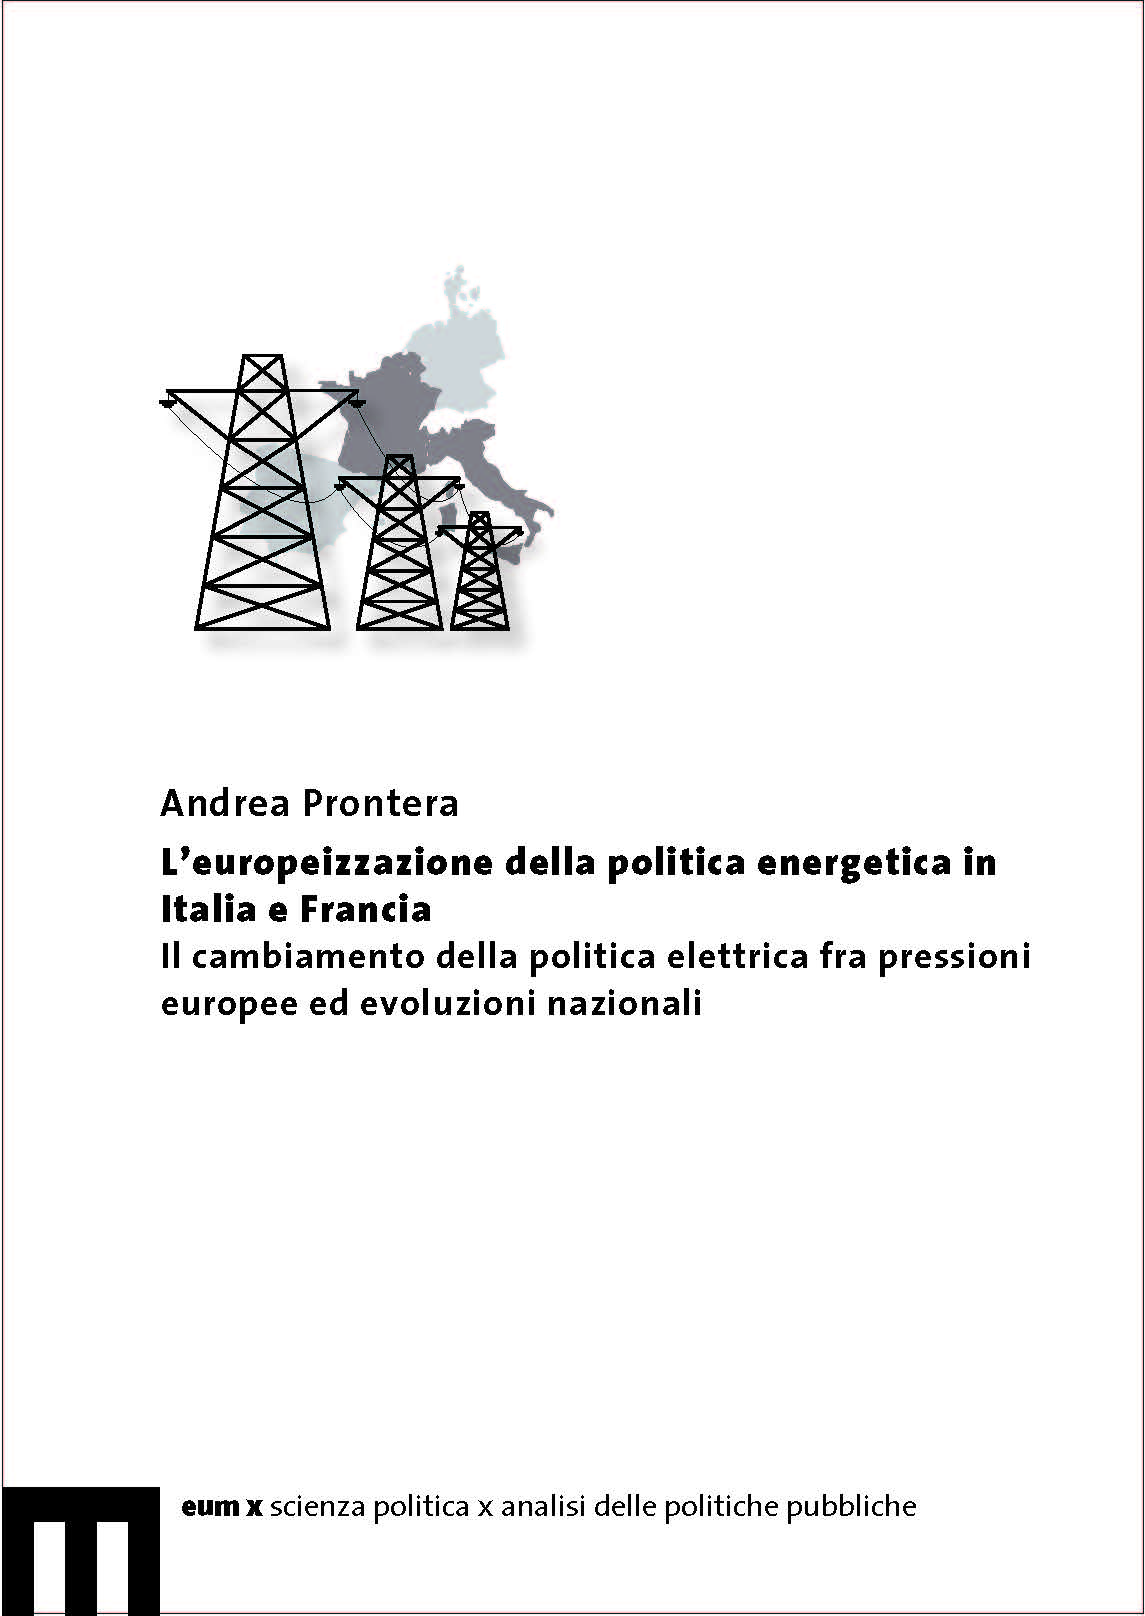 L’europeizzazione della politica energetica in Italia e Francia